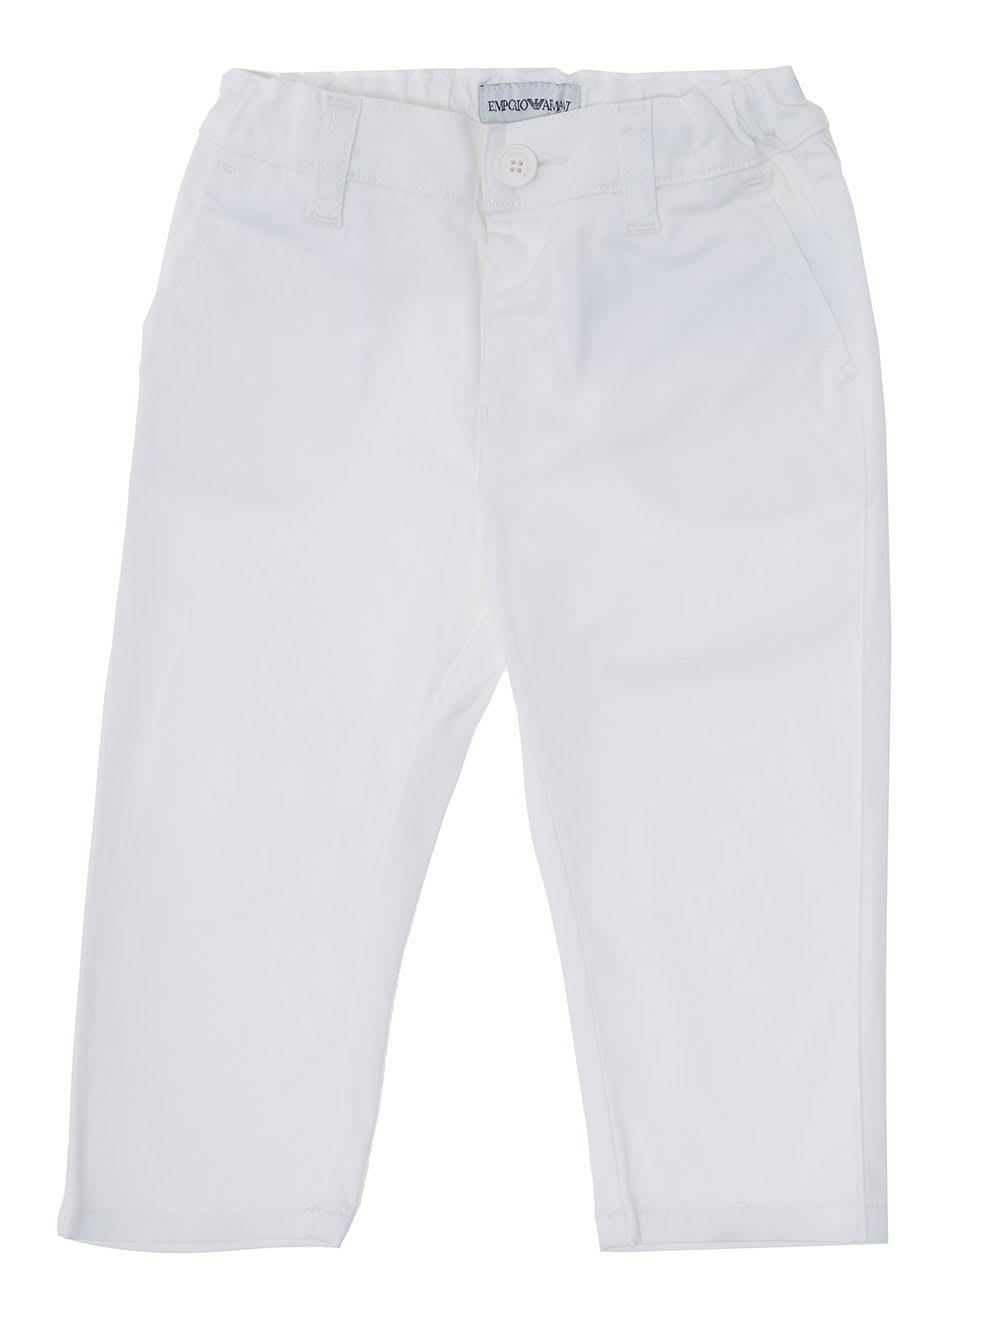 Emporio Armani Boy Cotton White Trousers With Elastic